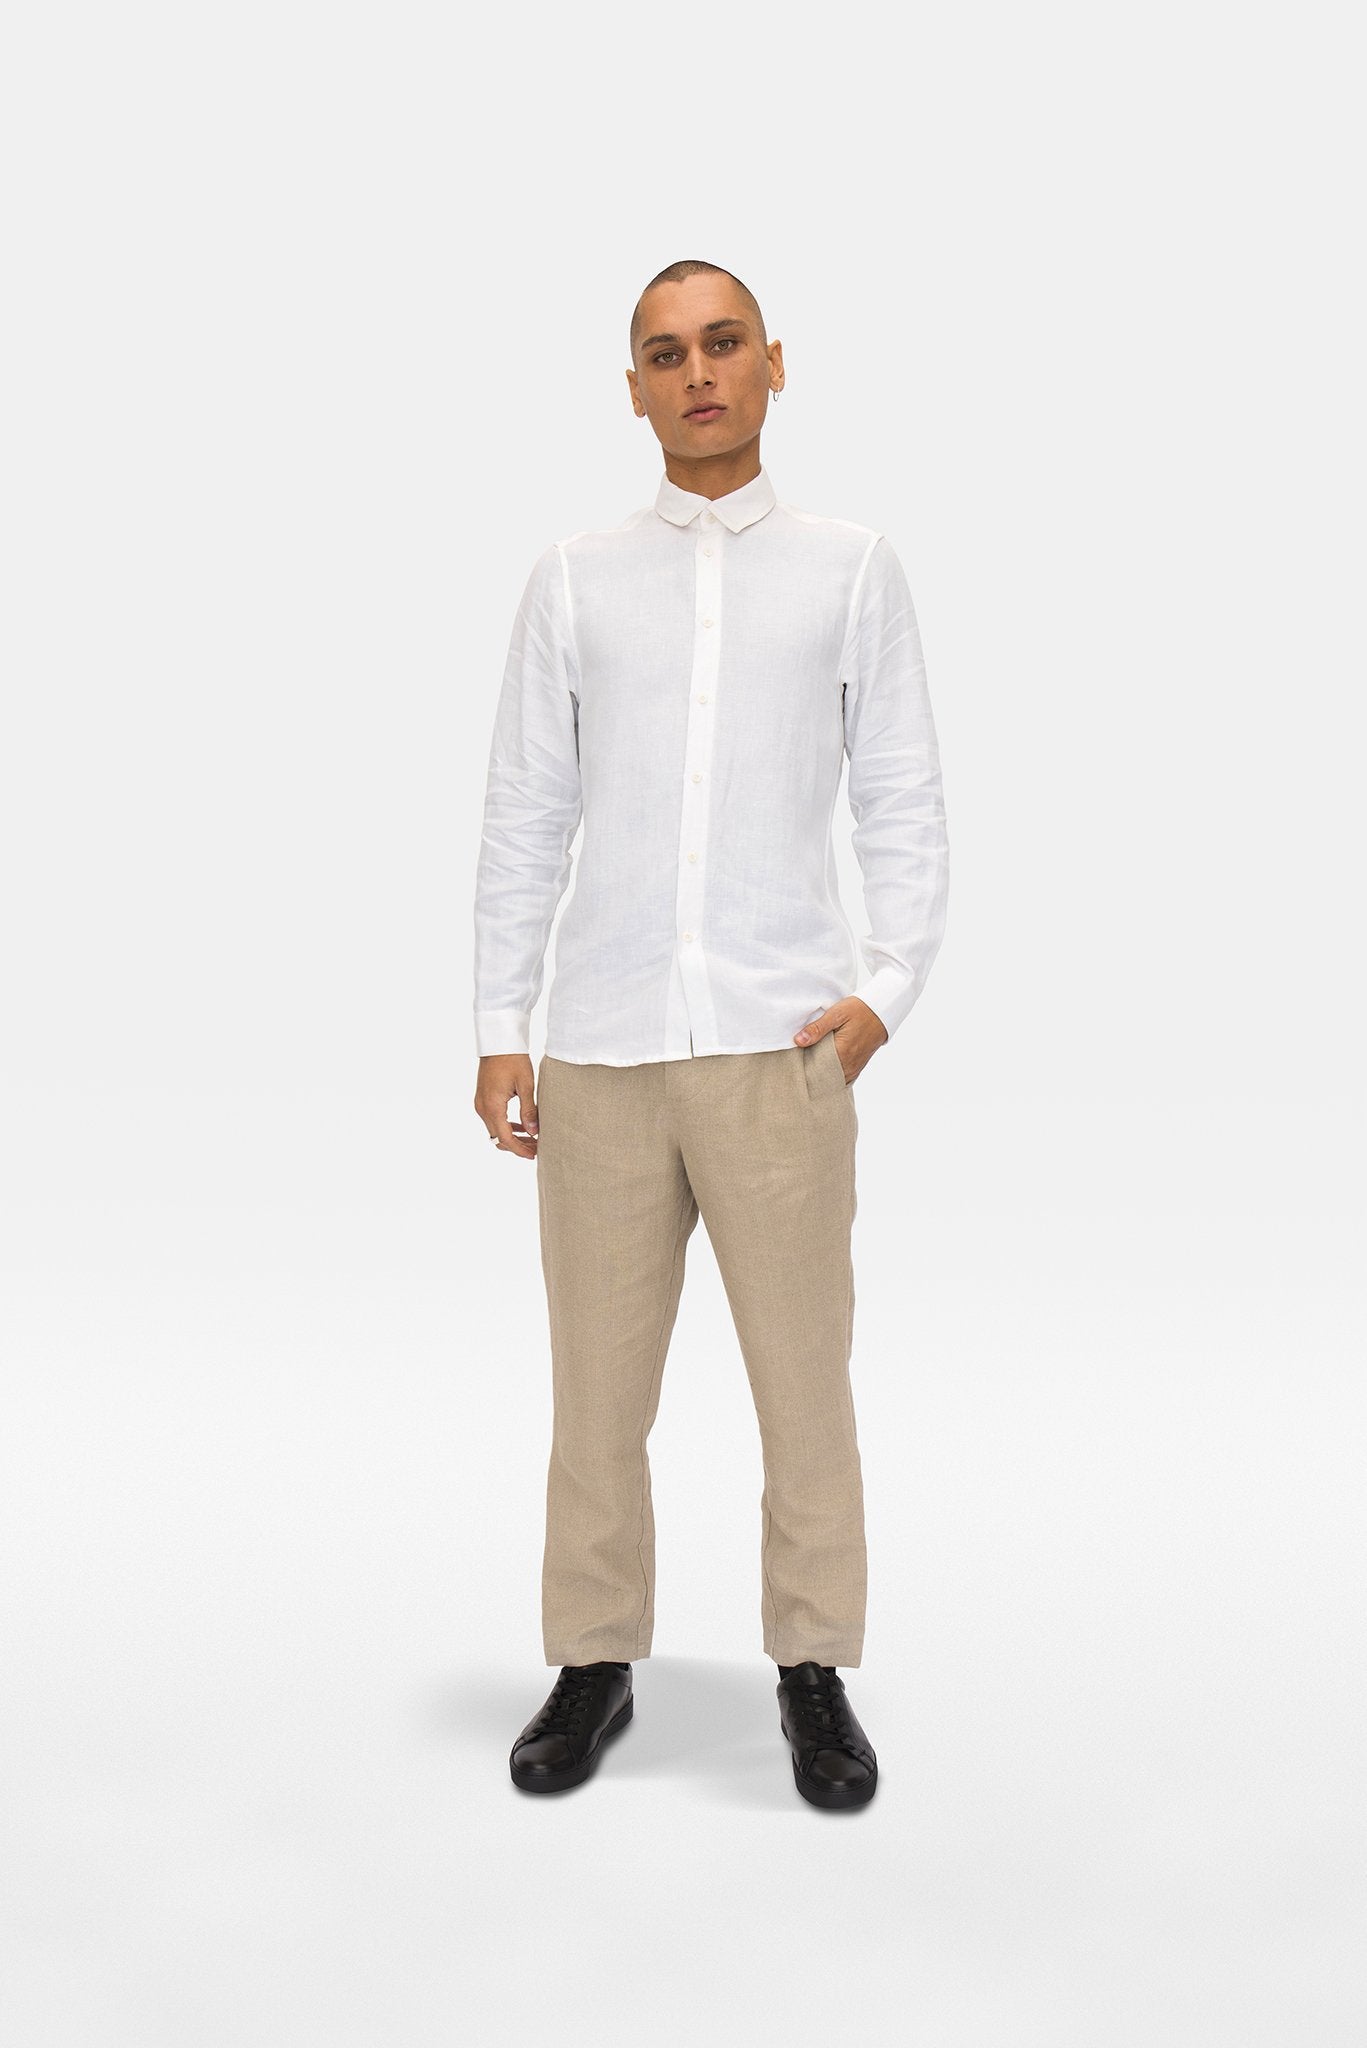 A.BCH A.04 White Long Sleeve Button Up Shirt in Organic Linen